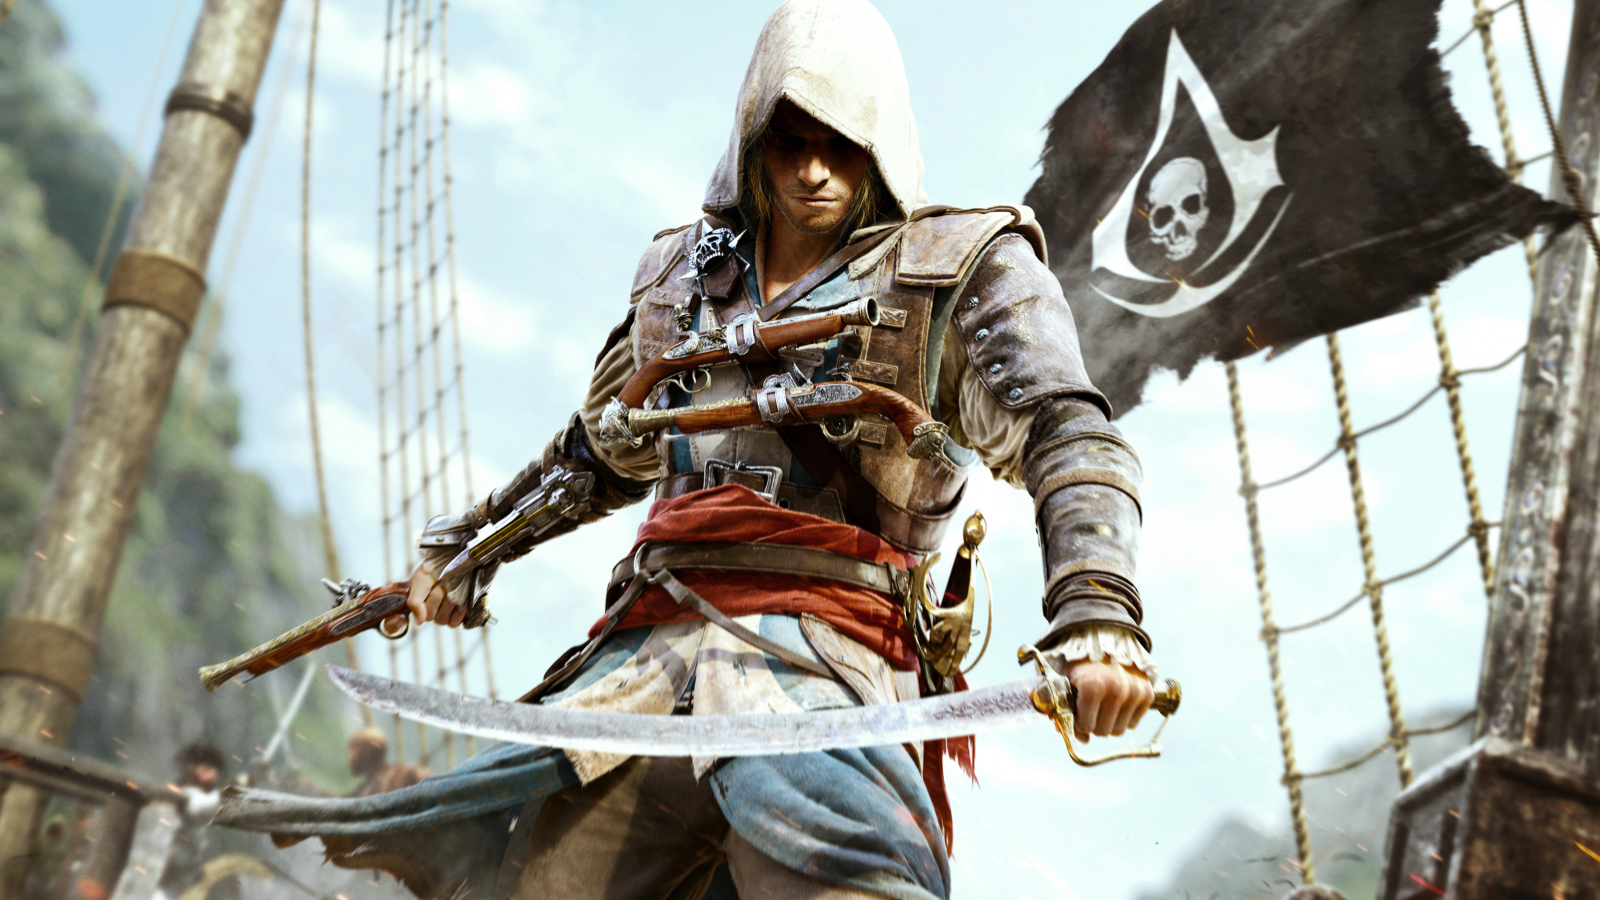 📈 Після релізу Skull and Bones кількість гравців у Assassin's Creed 4: Black Flag зросла майже у 3 рази